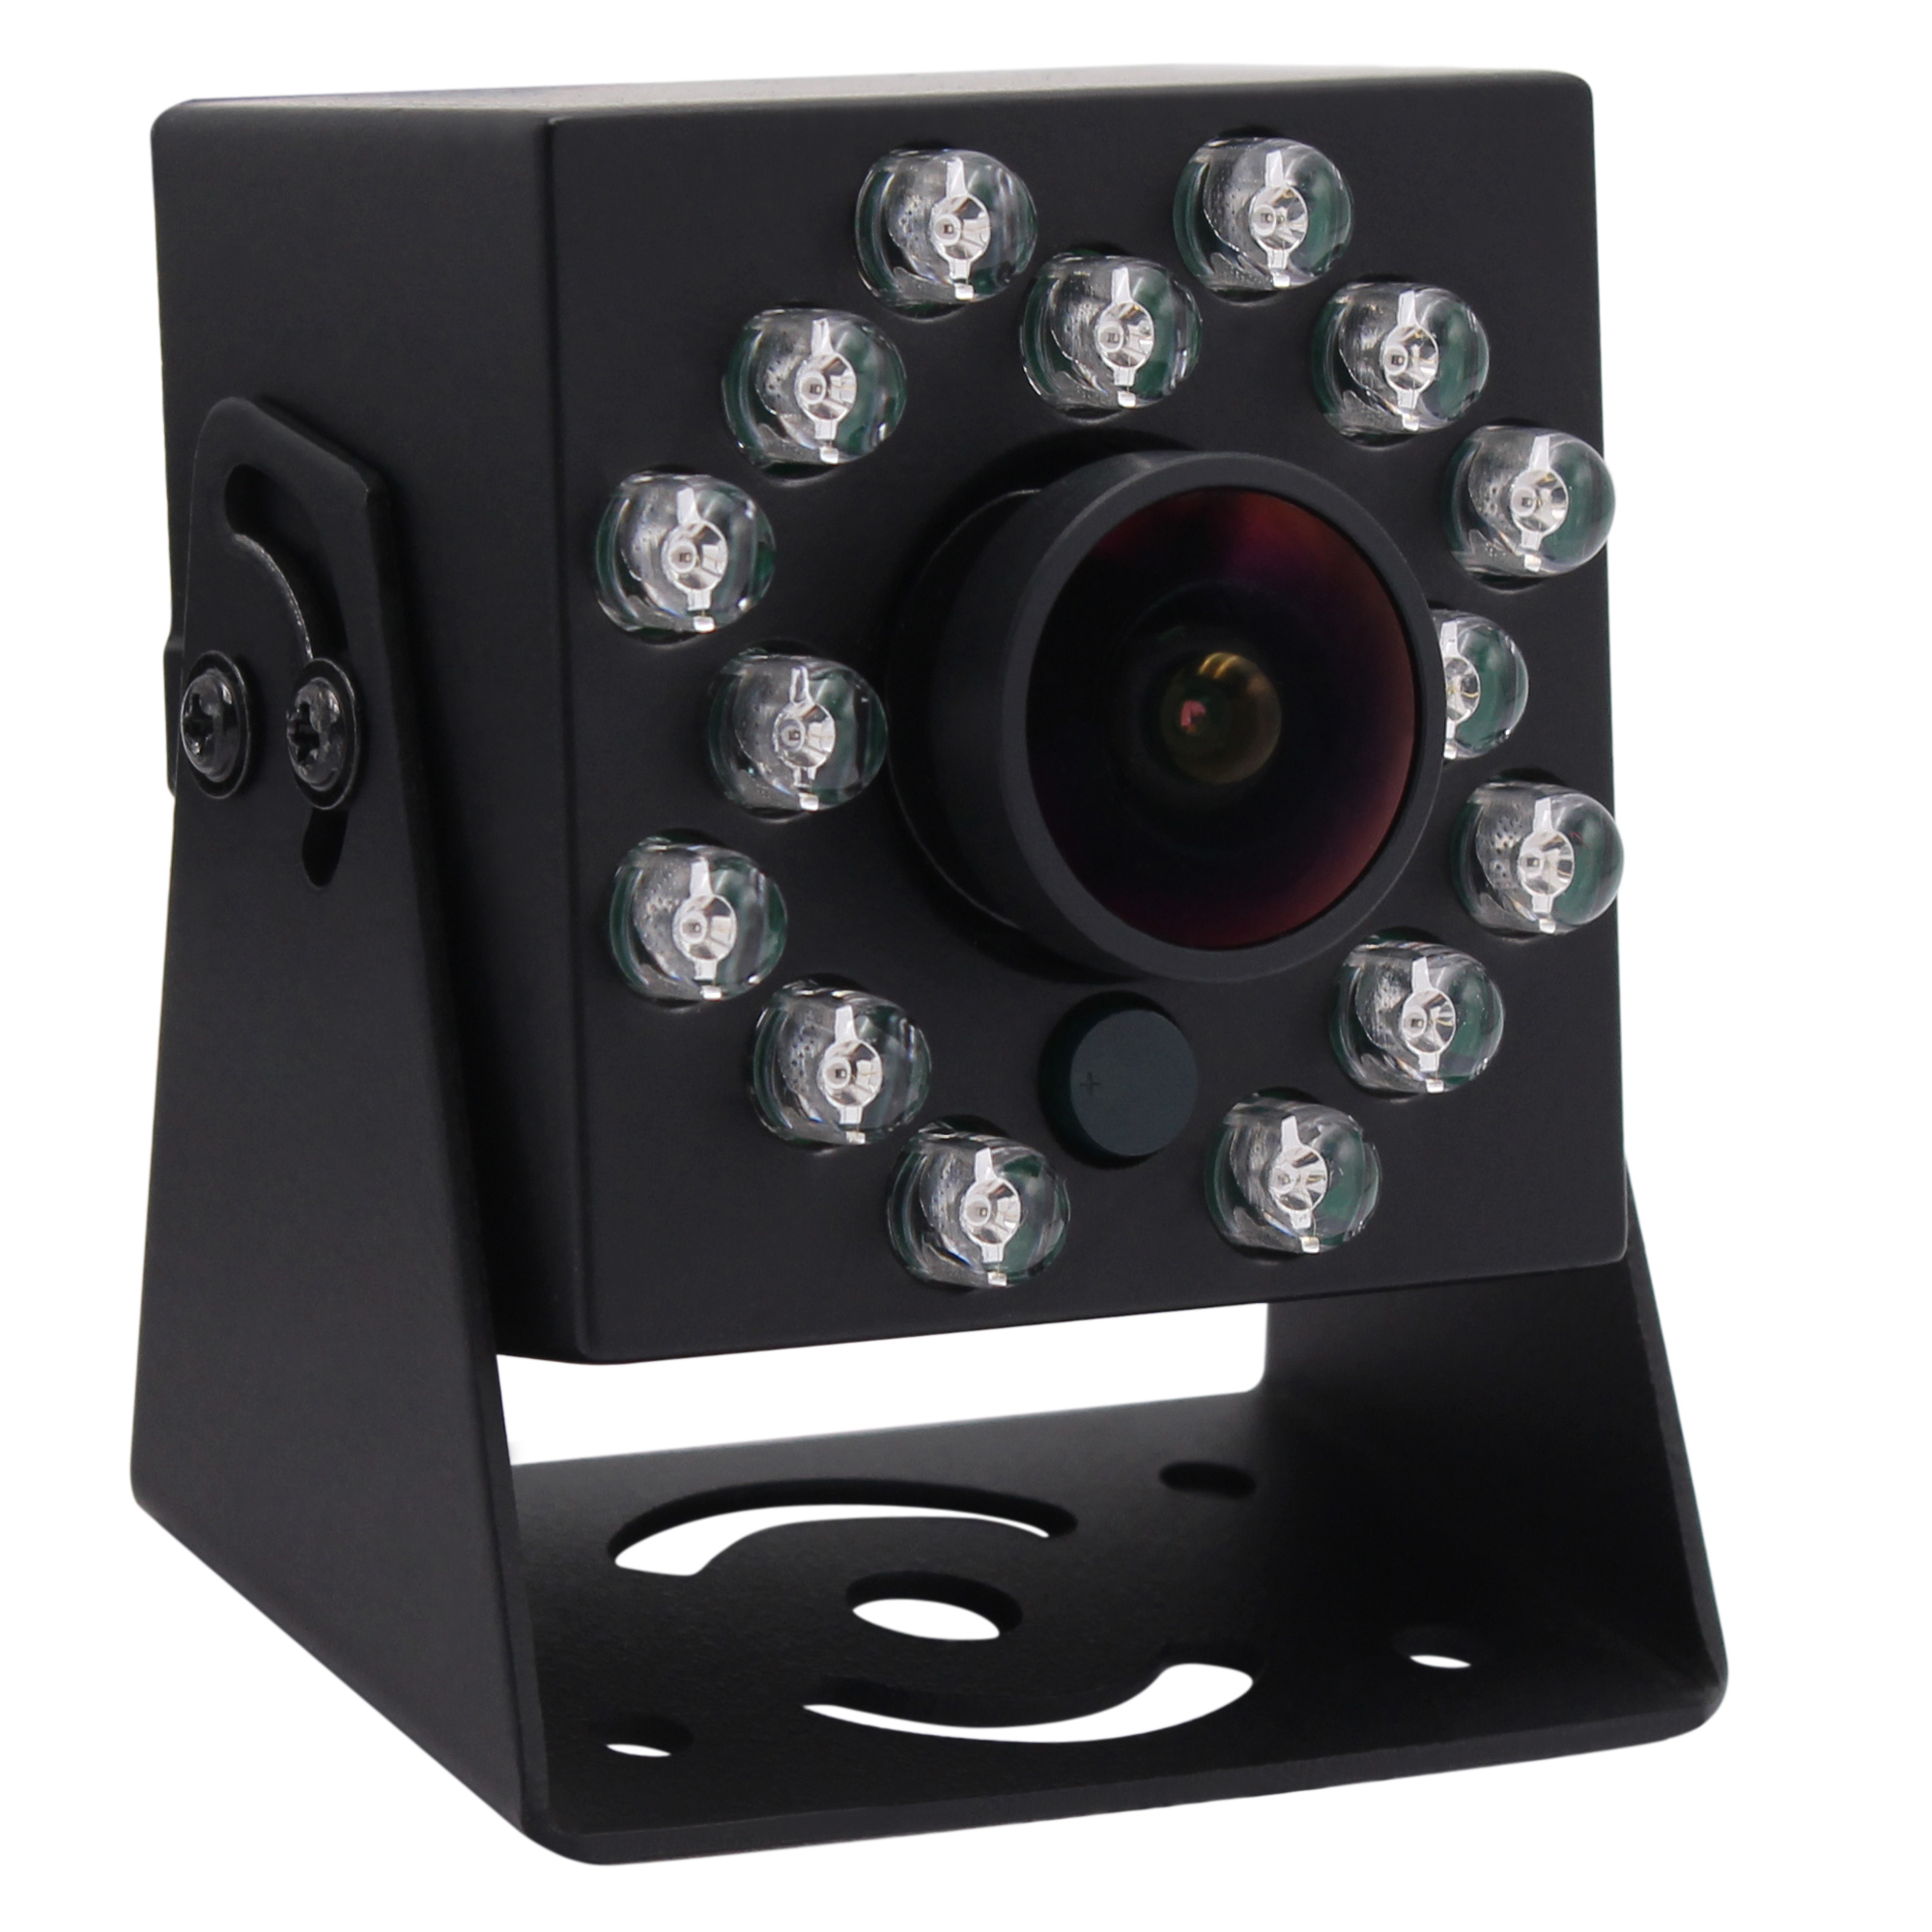 ELP Low Light Webcam UVC IMX323 Sensor 30fps 1920*1080 IR infrared USB Web Camera Home Video Security Surveillance Camera